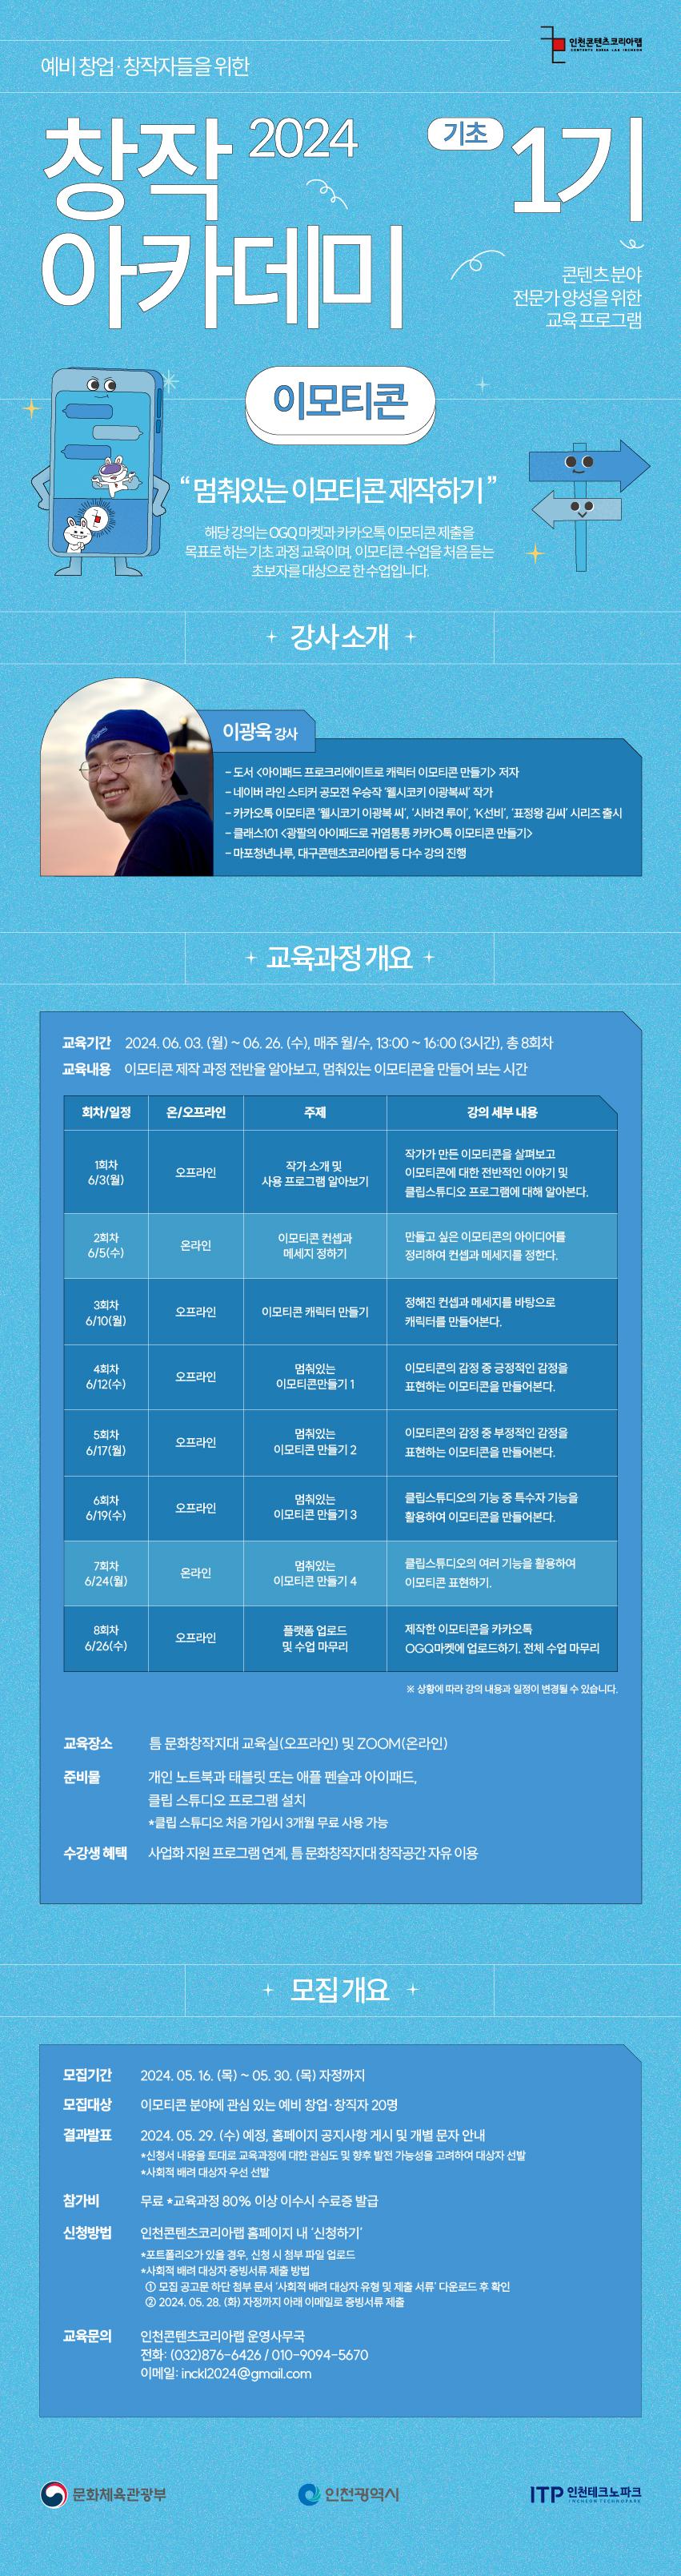 [무료 교육] 창작아카데미 1기 - 이모티콘(기초과정) 수강생 모집  포스터